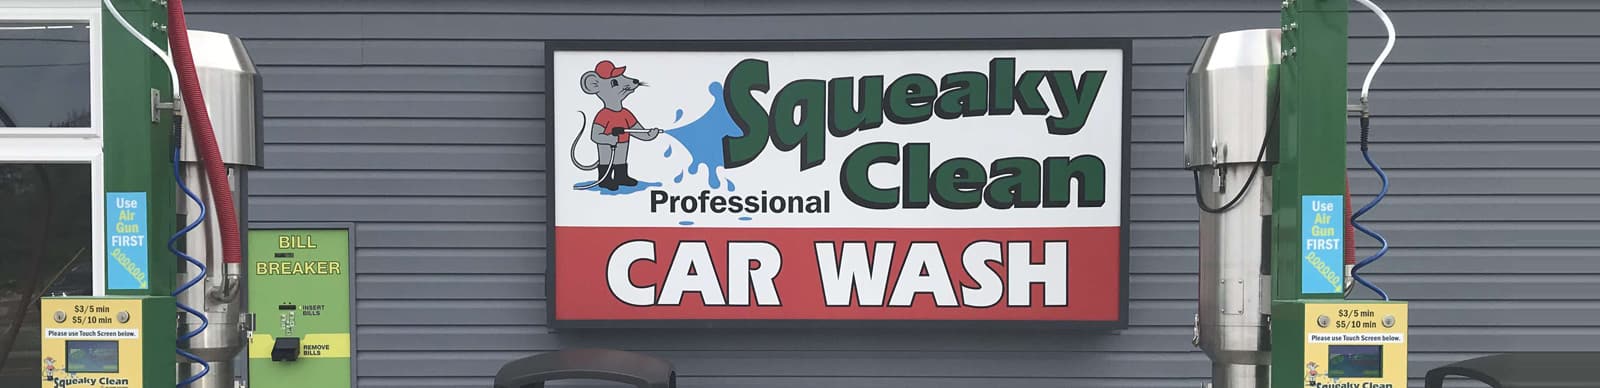 Professional Car Wash